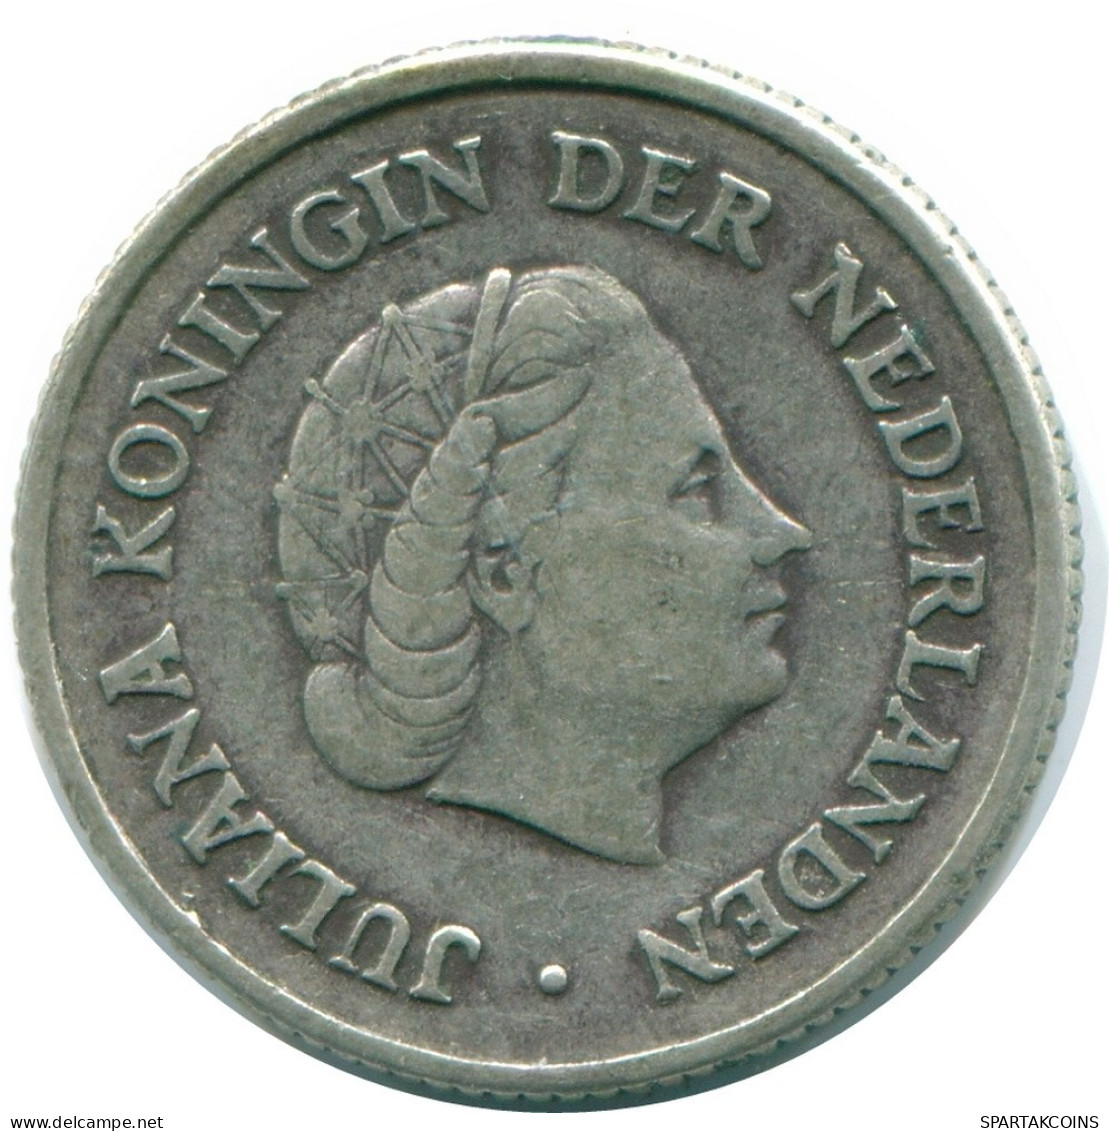 1/4 GULDEN 1963 NIEDERLÄNDISCHE ANTILLEN SILBER Koloniale Münze #NL11209.4.D.A - Niederländische Antillen